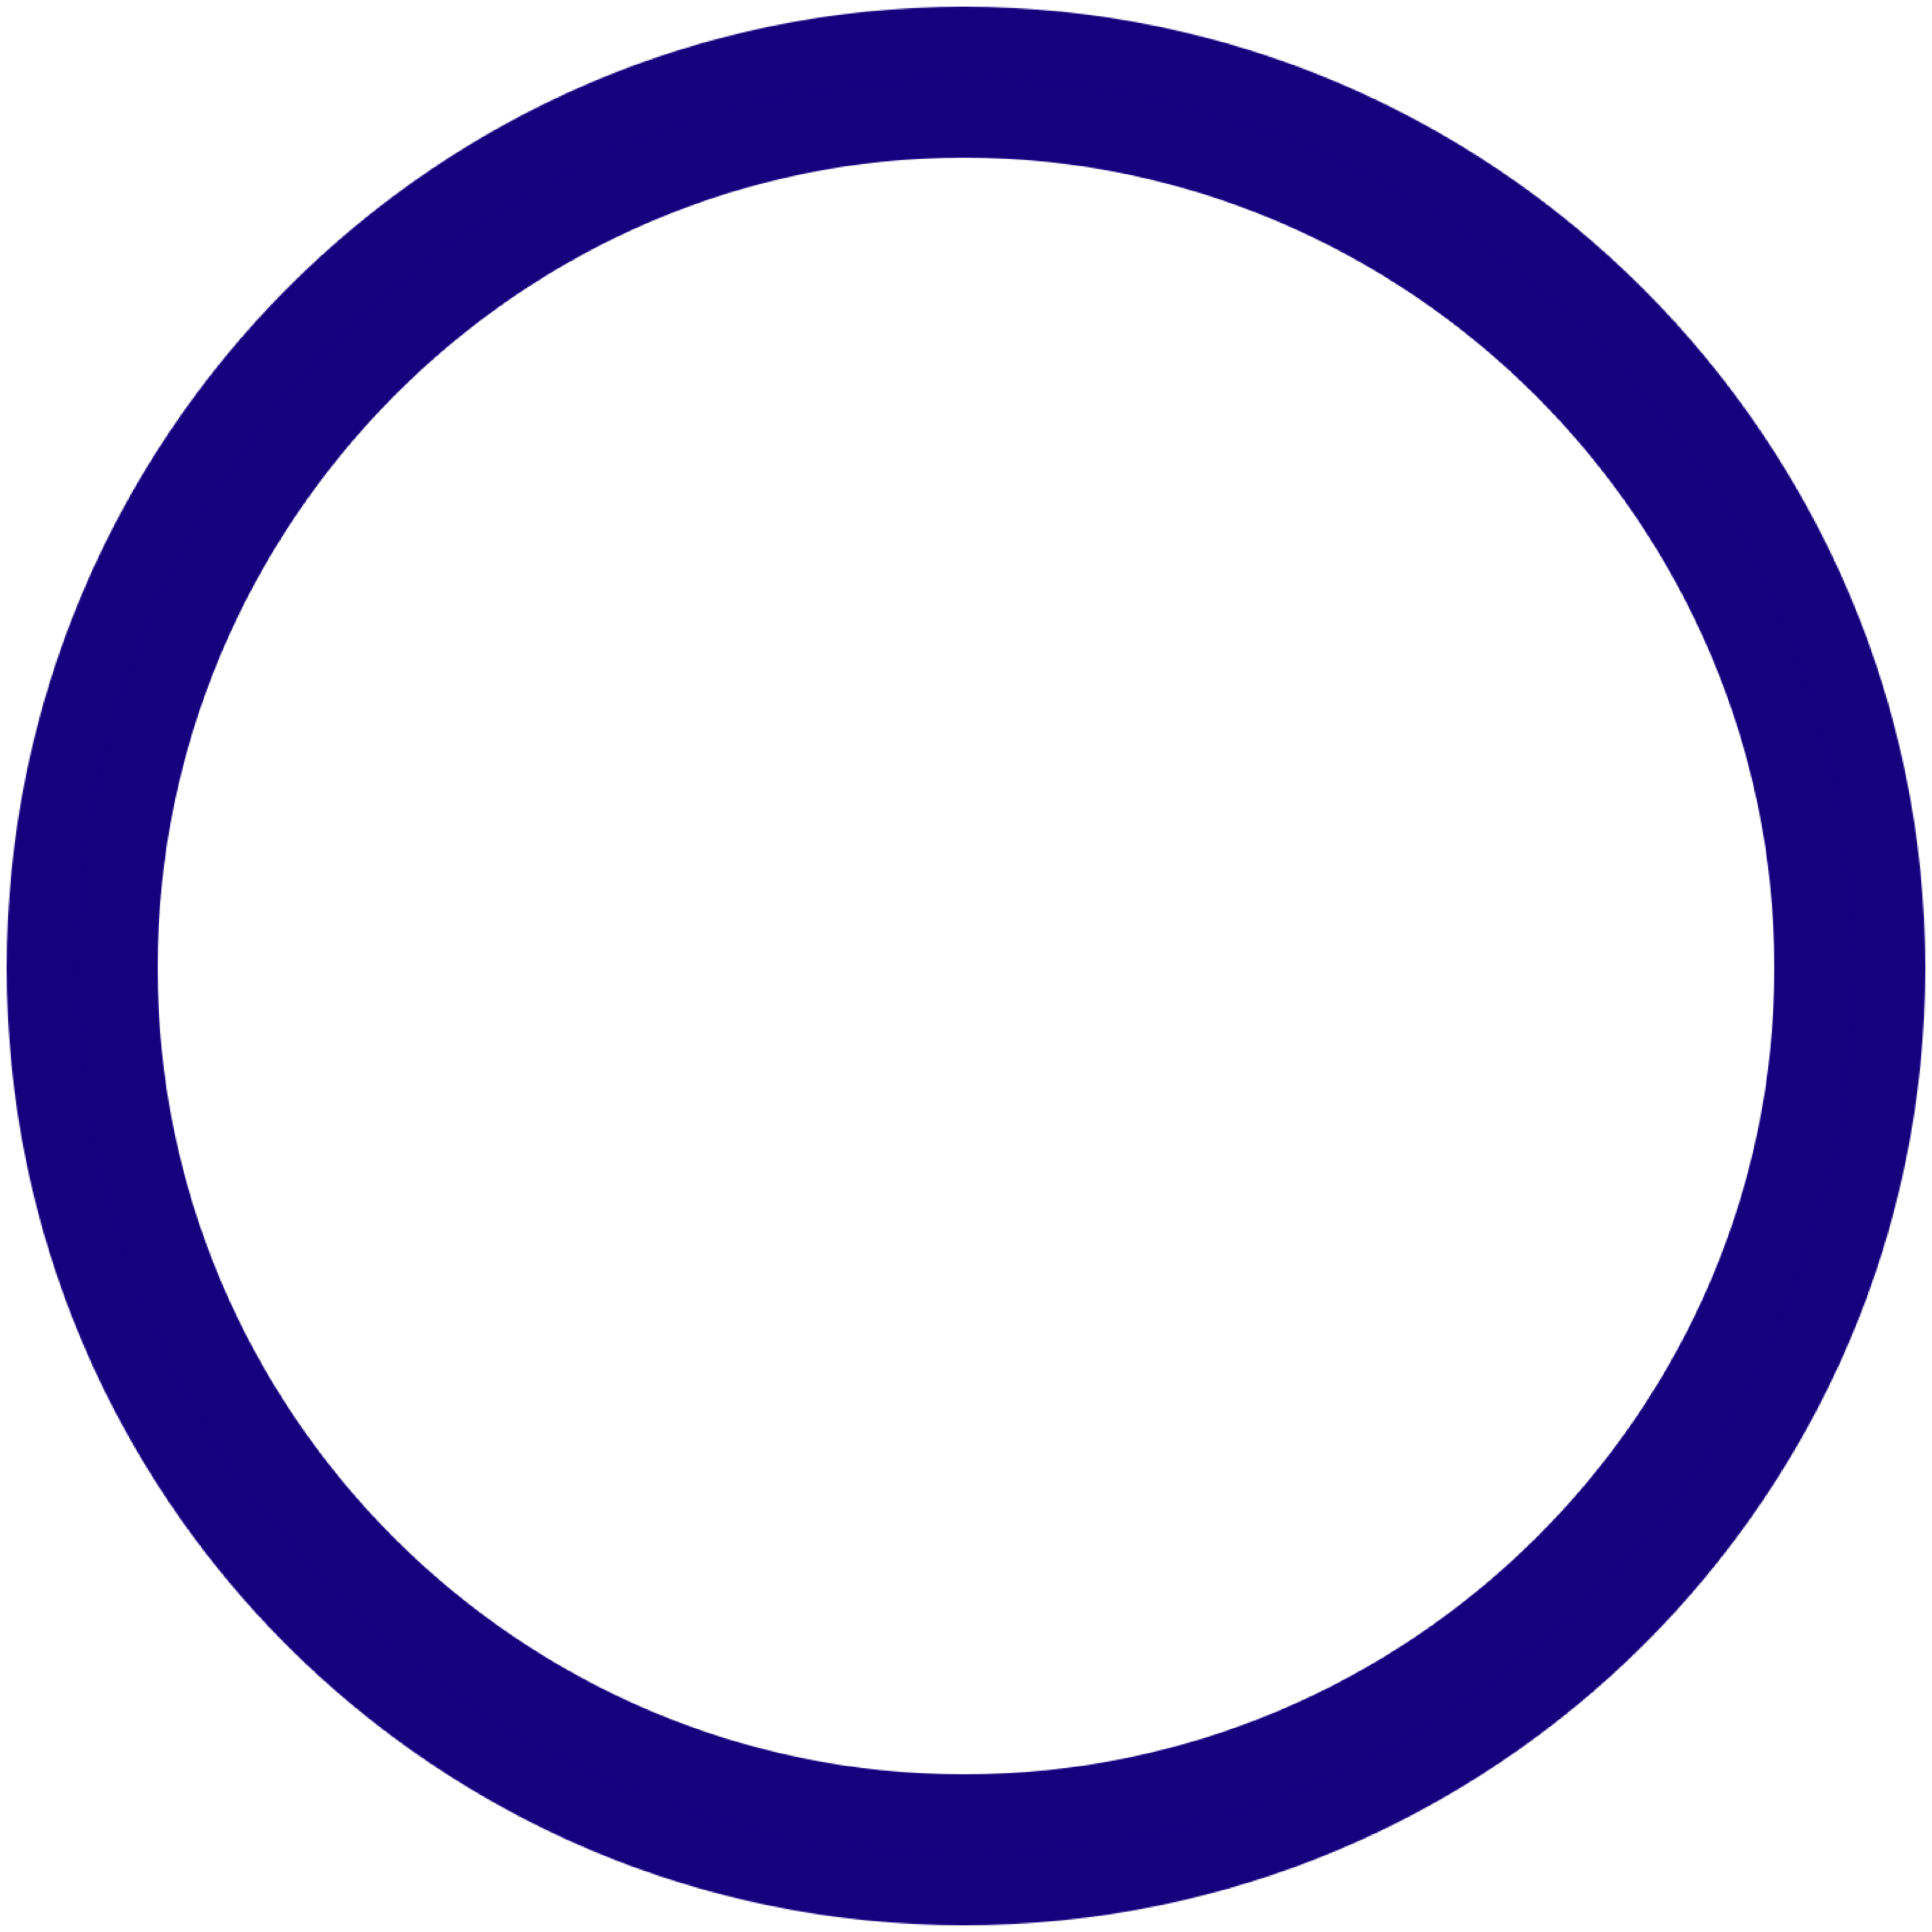 Circular Frame PNG Image